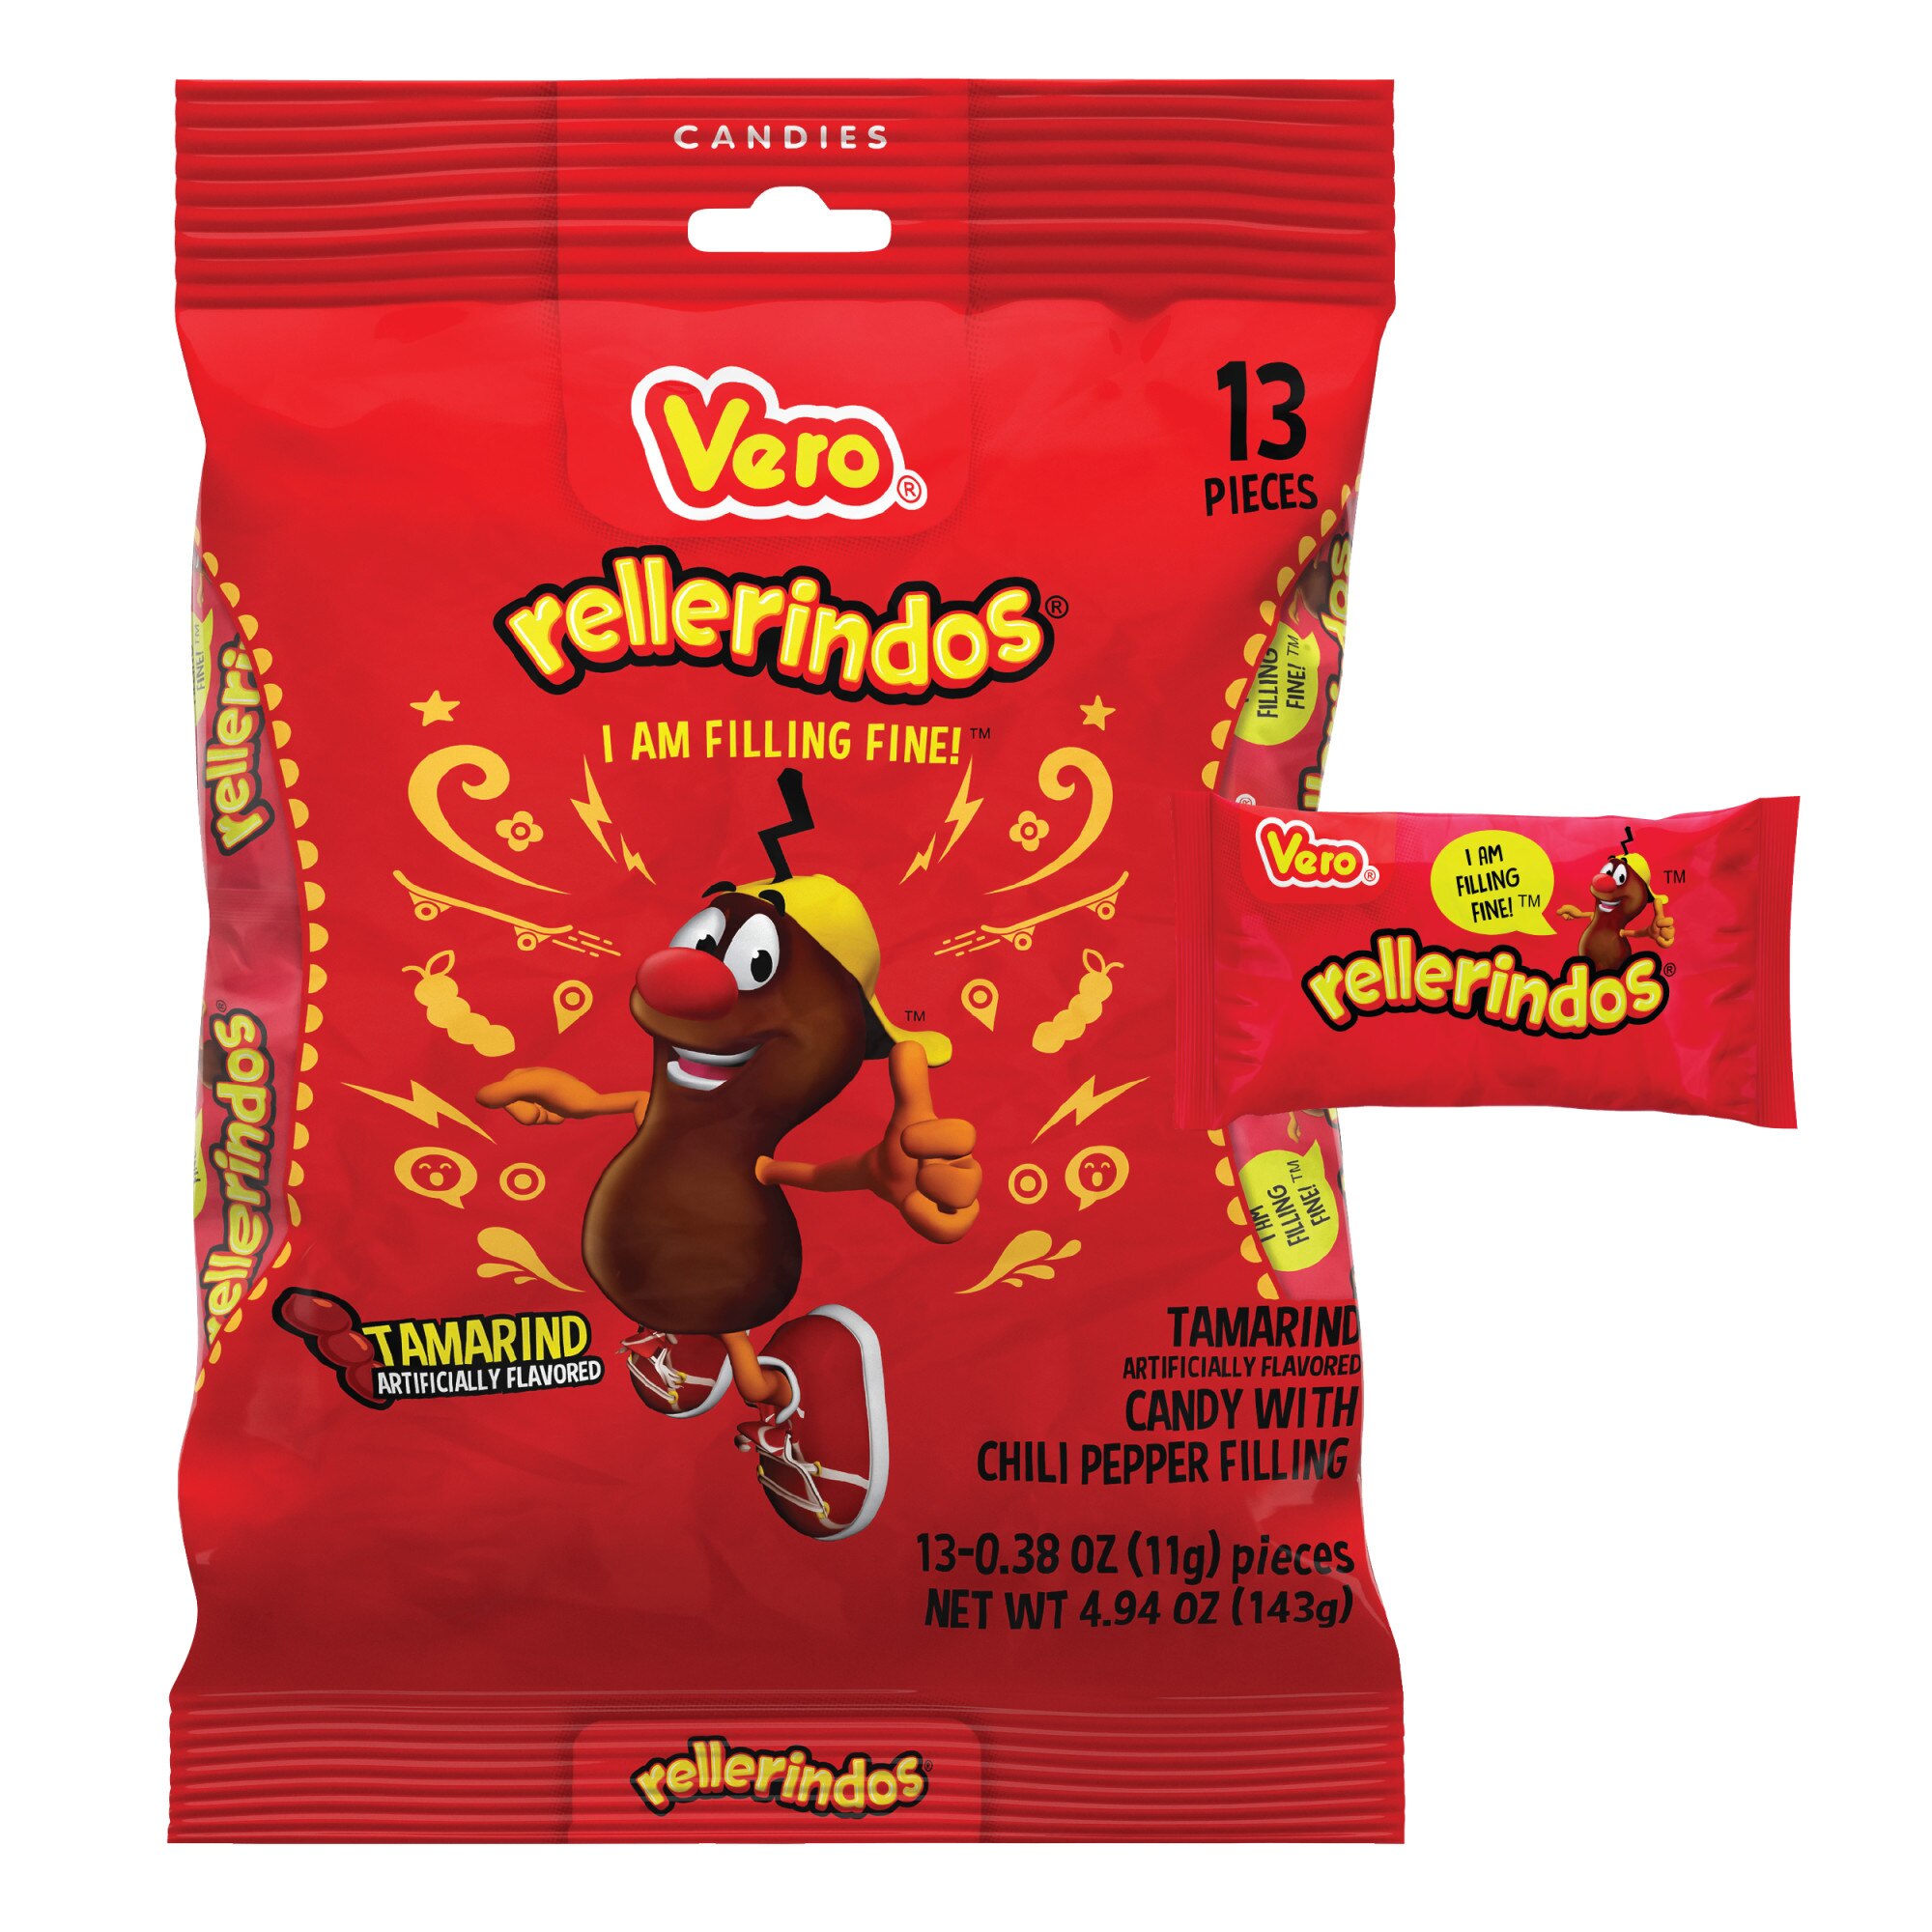 Vero Rellerindos Tamarind Hard Candy